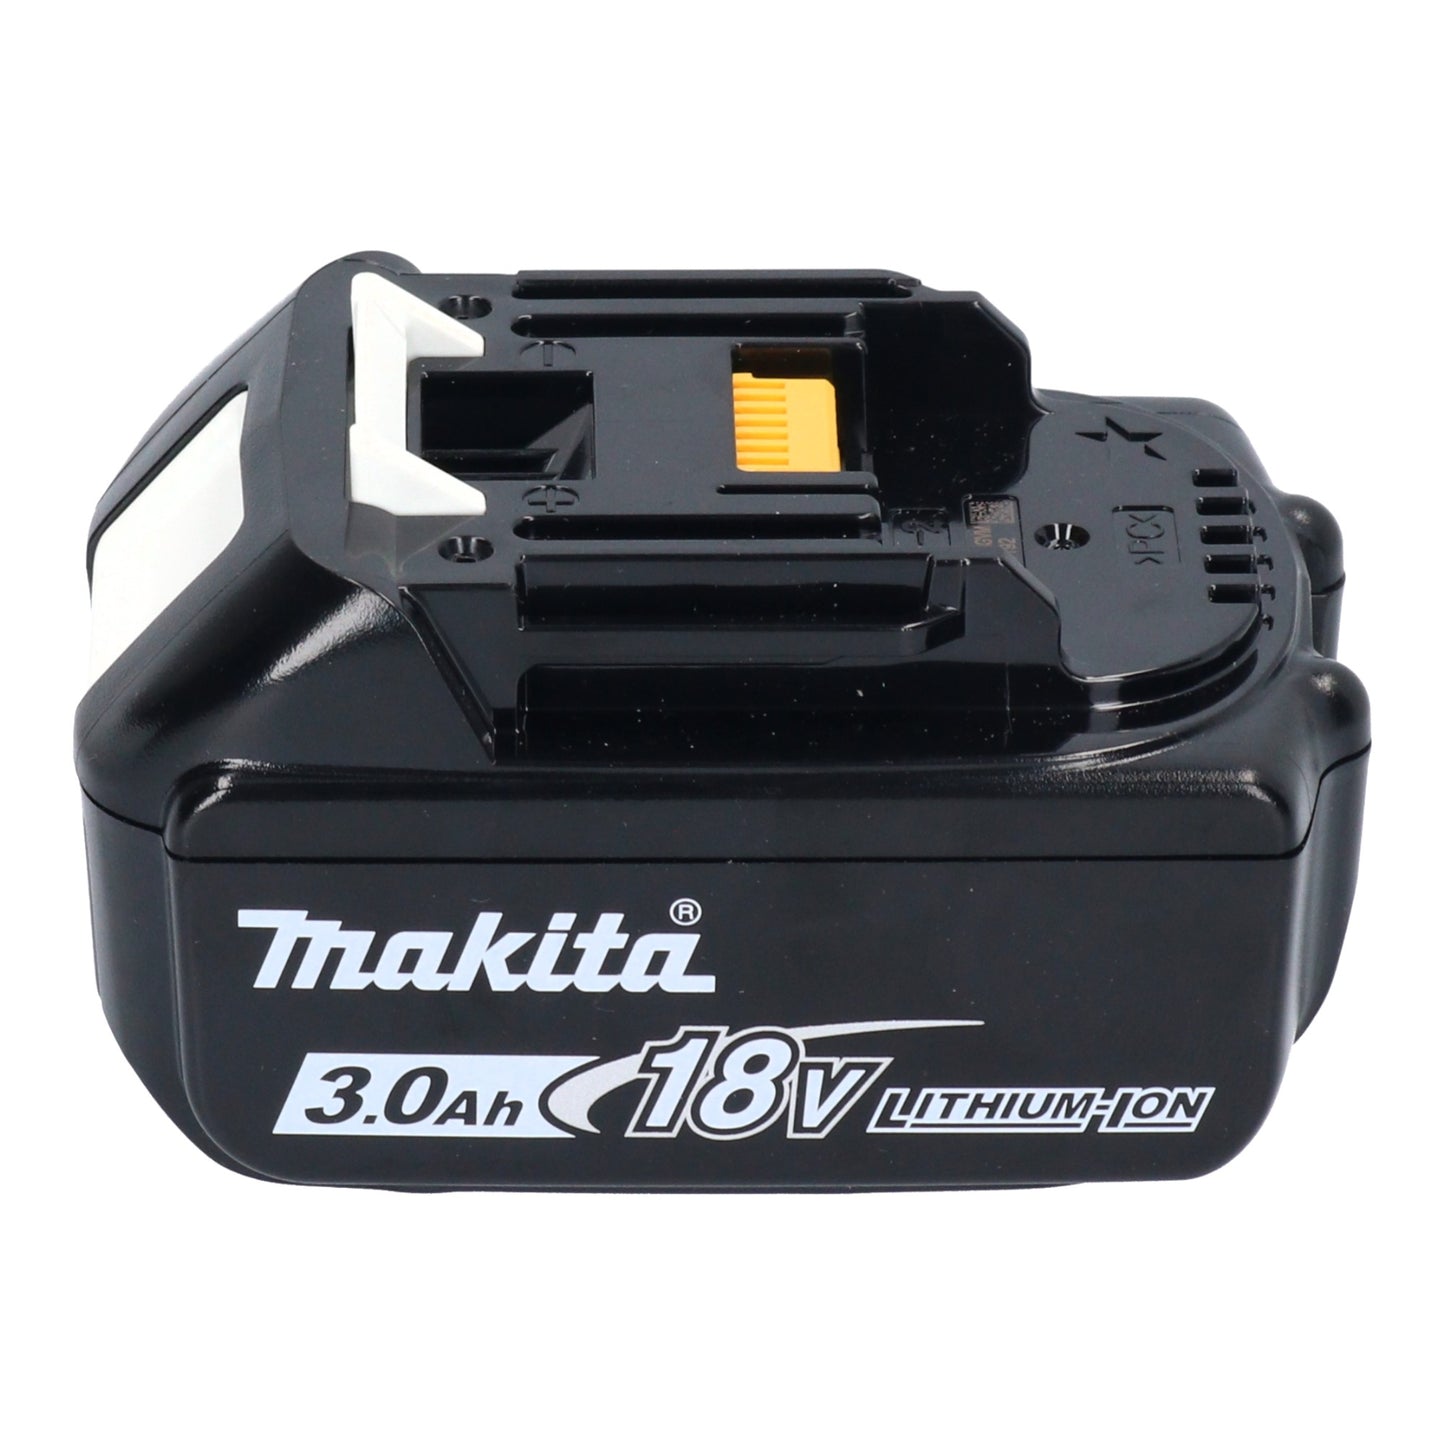 Makita DKT 360 F2 Akku Wasserkocher 36 V ( 2x 18 V ) 0,8 L  + 2x Akku 3,0 Ah - ohne Ladegerät